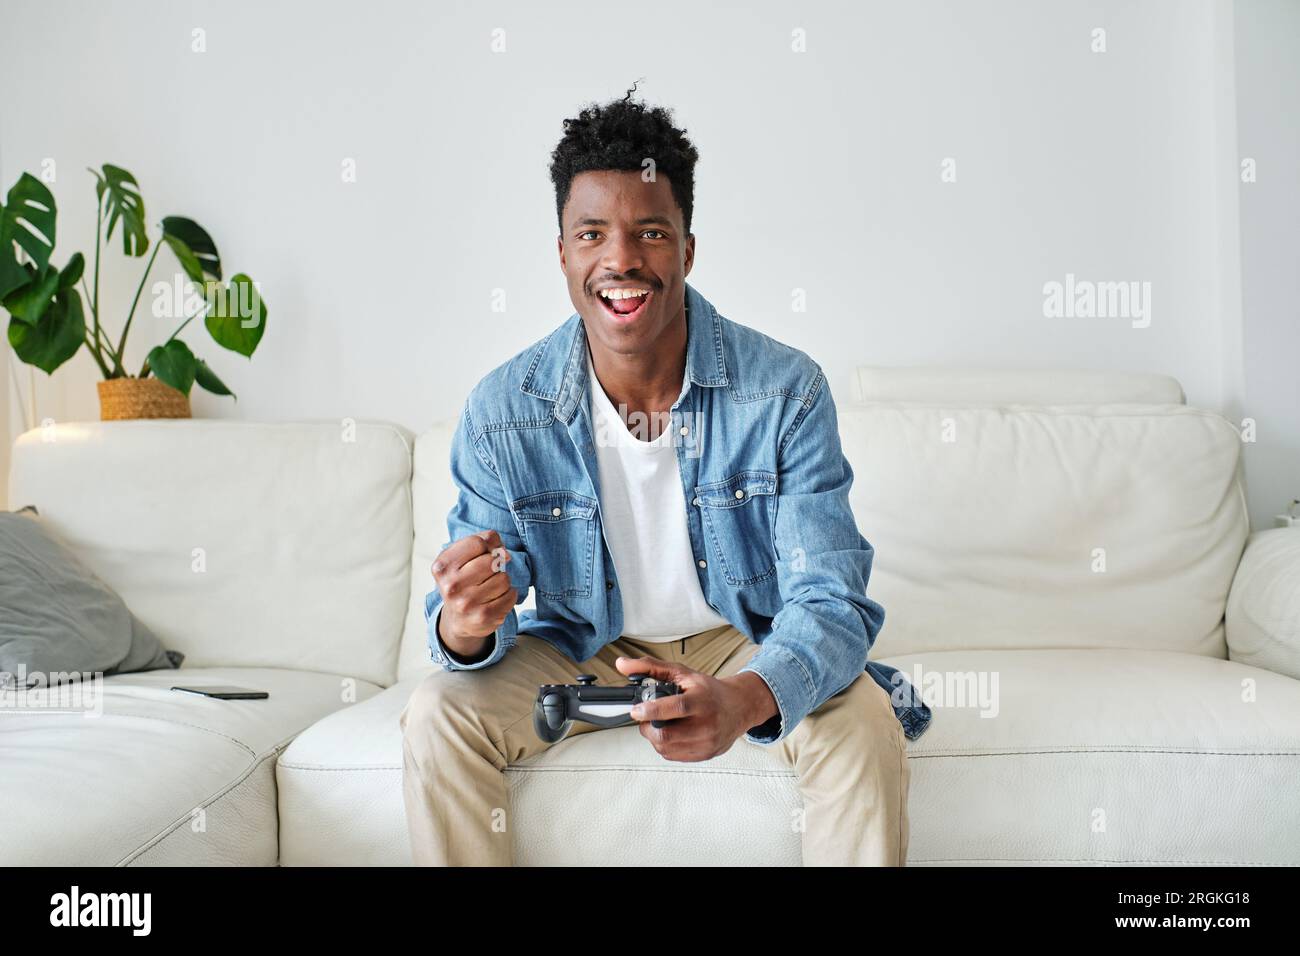 Fröhlicher afroamerikanischer Gamer in lässiger Kleidung, der Videospiel spielt und vor Aufregung die Faust hebt, während er auf einem bequemen Sofa sitzt Stockfoto